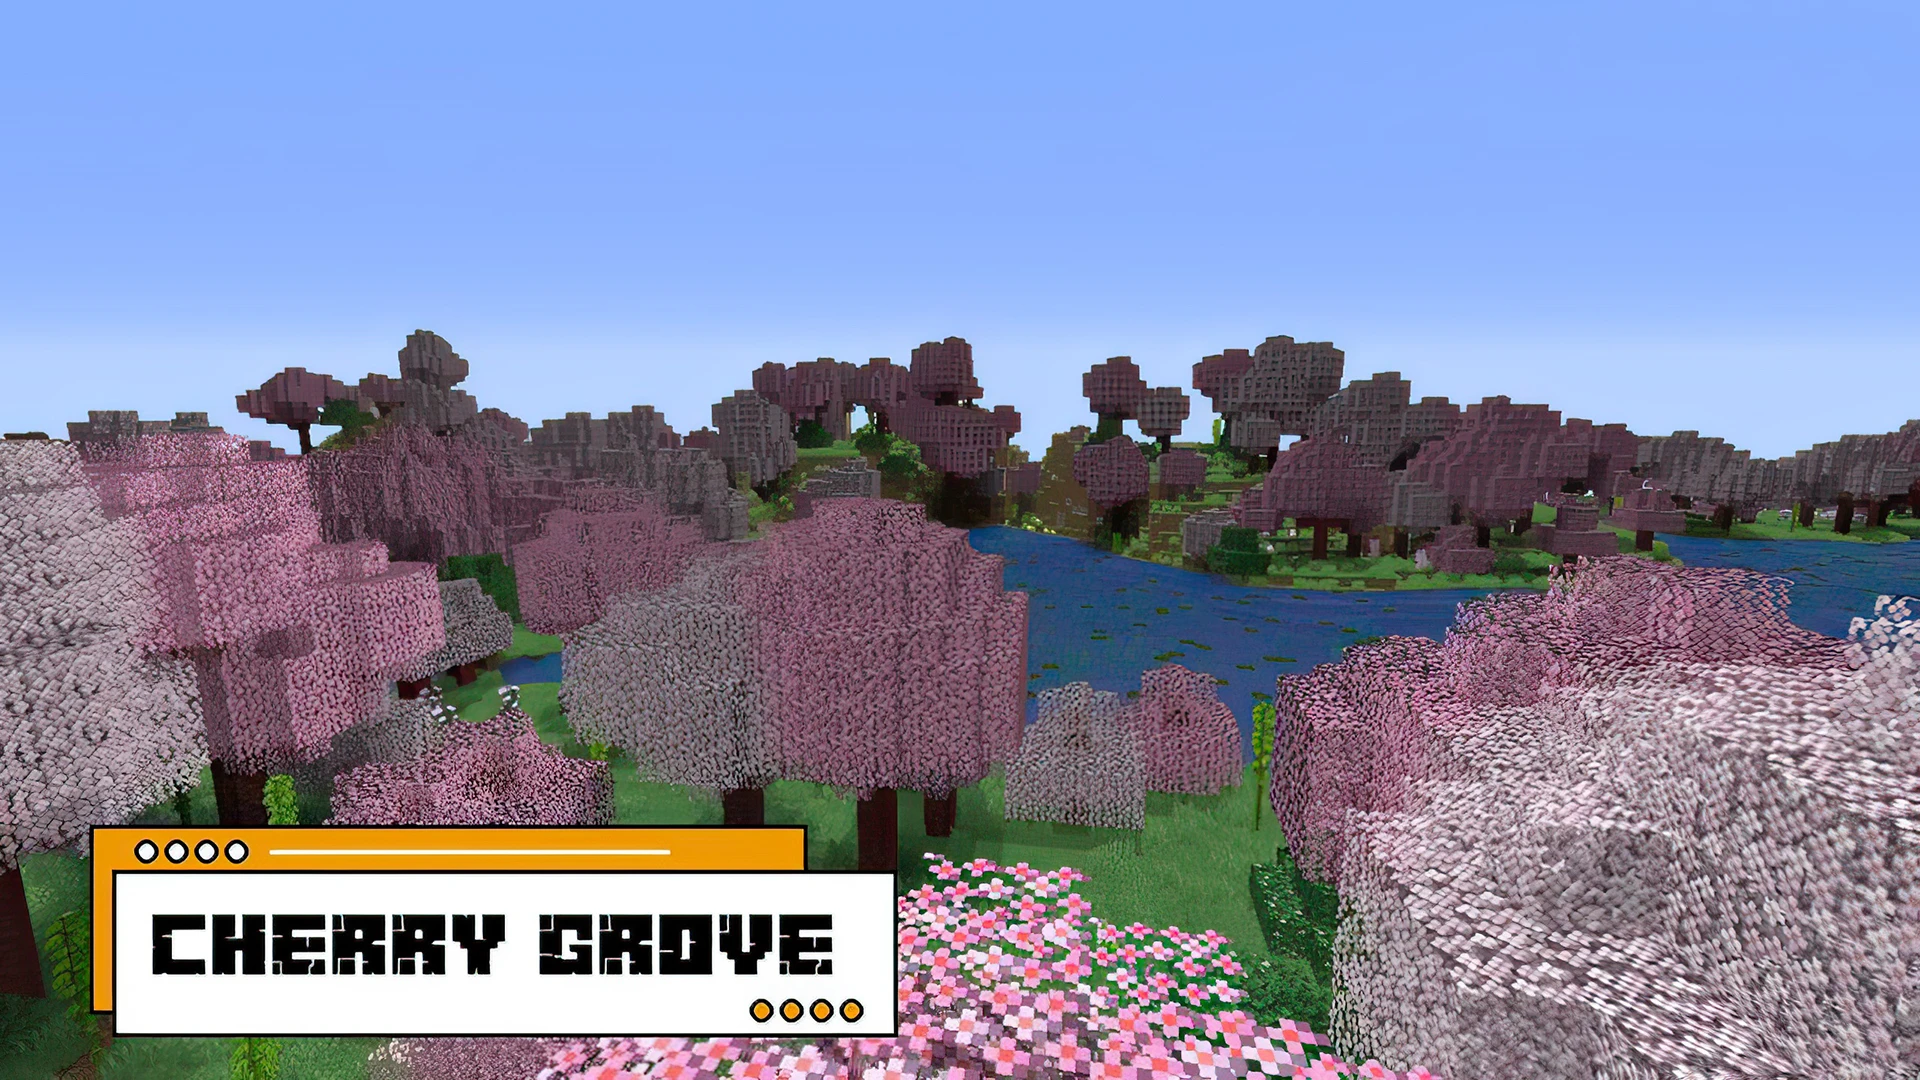 Cherry grove